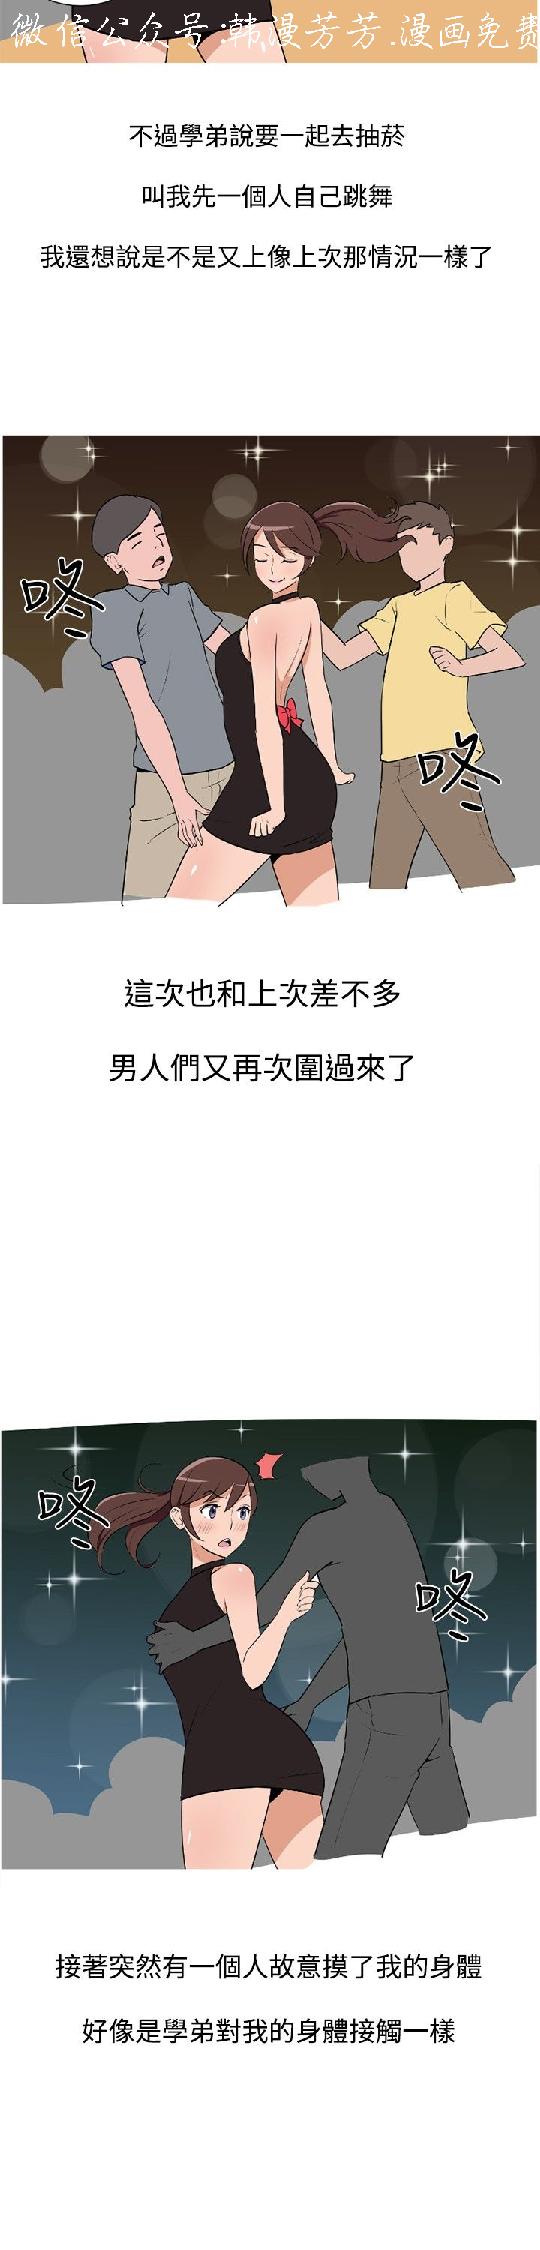 調教女大生【中文】 page 49 full